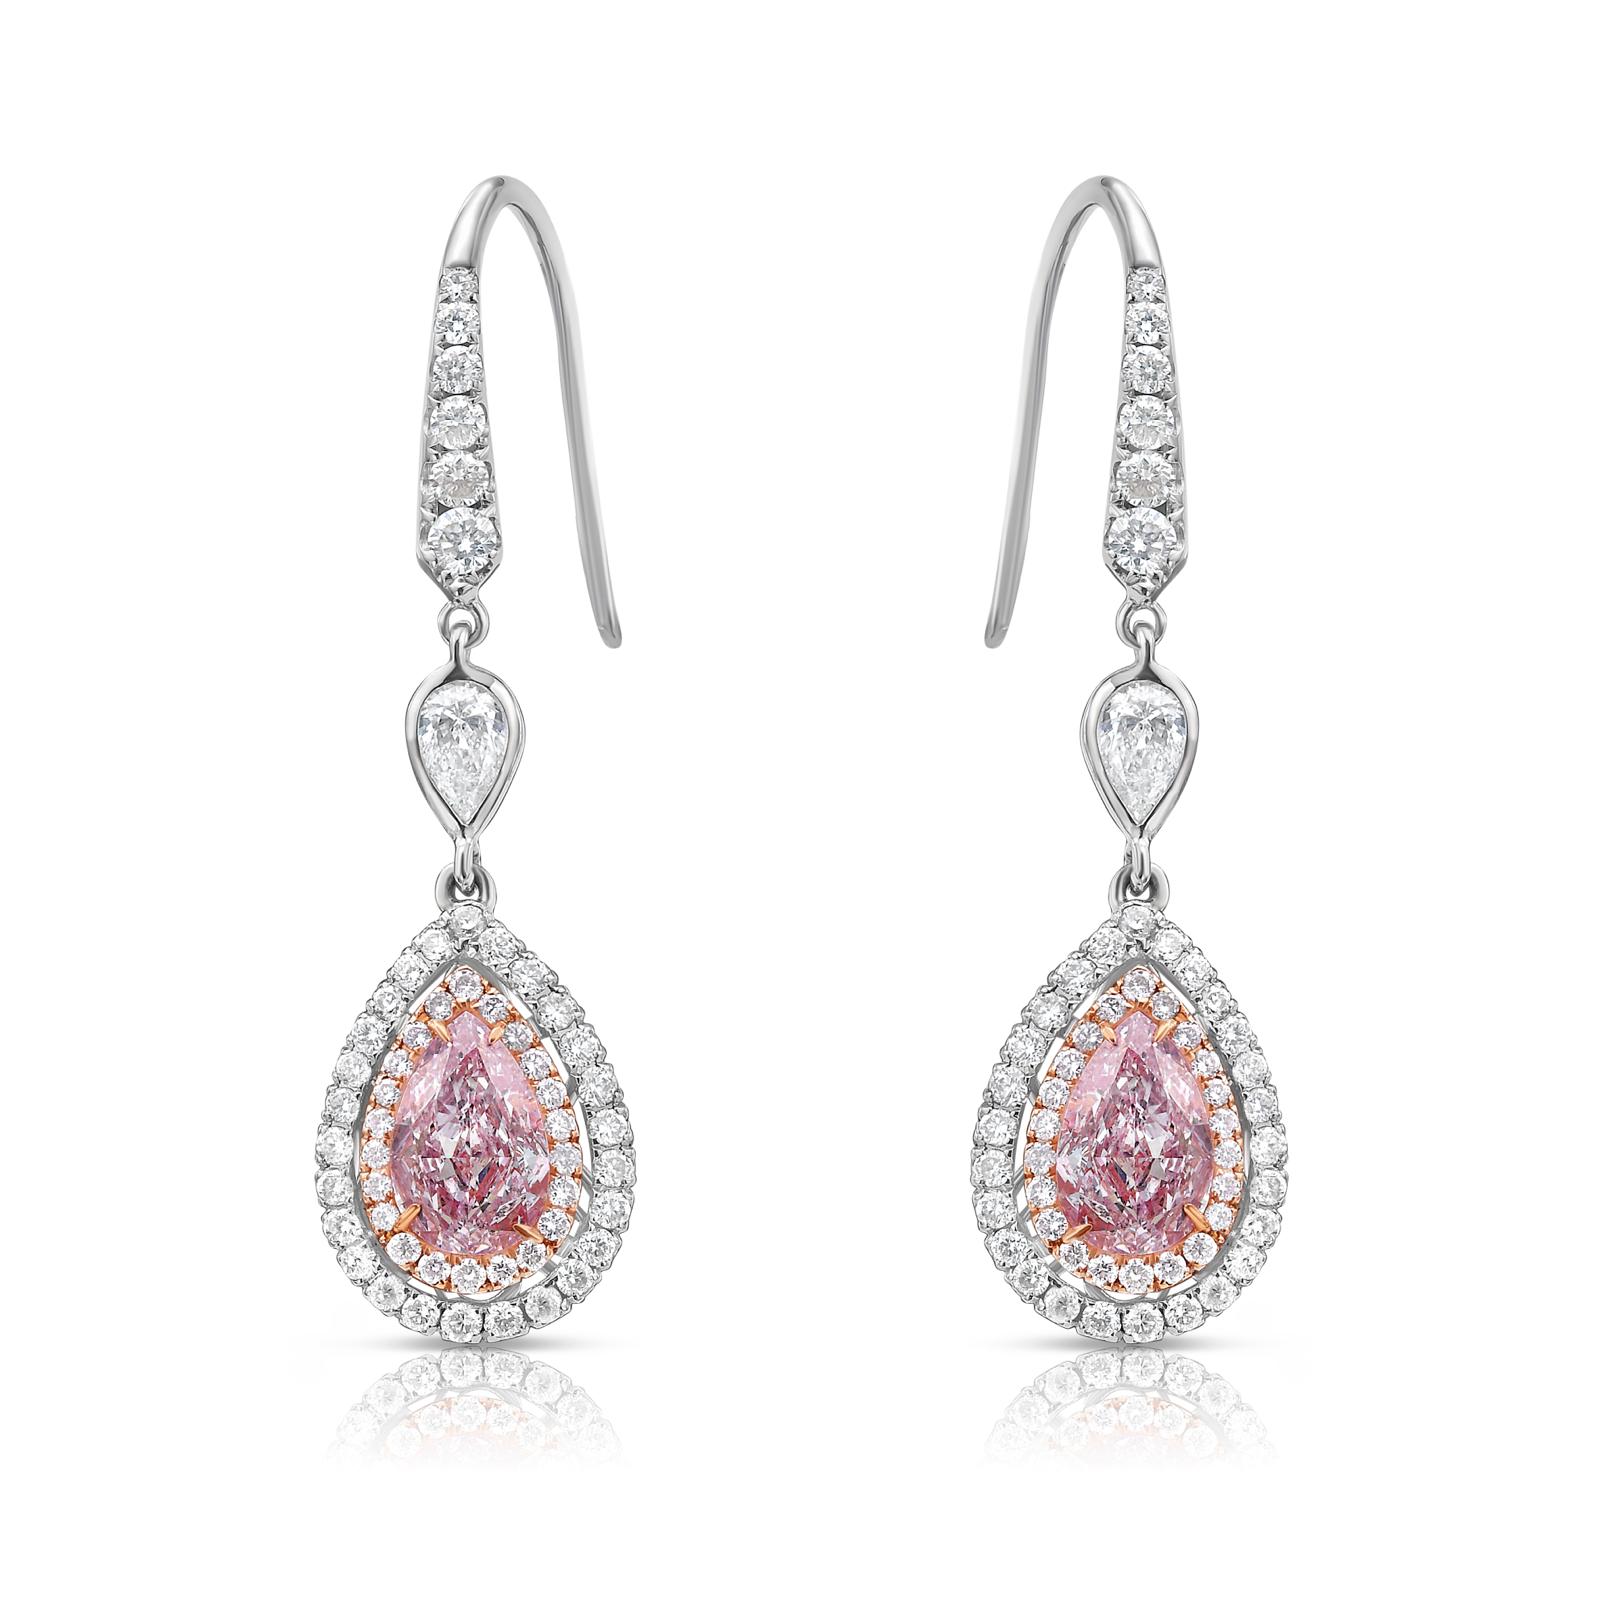 Pin by Manoj kadel on Earrings | Beautiful jewelry ring, Real diamond  earrings, Gold earrings designs